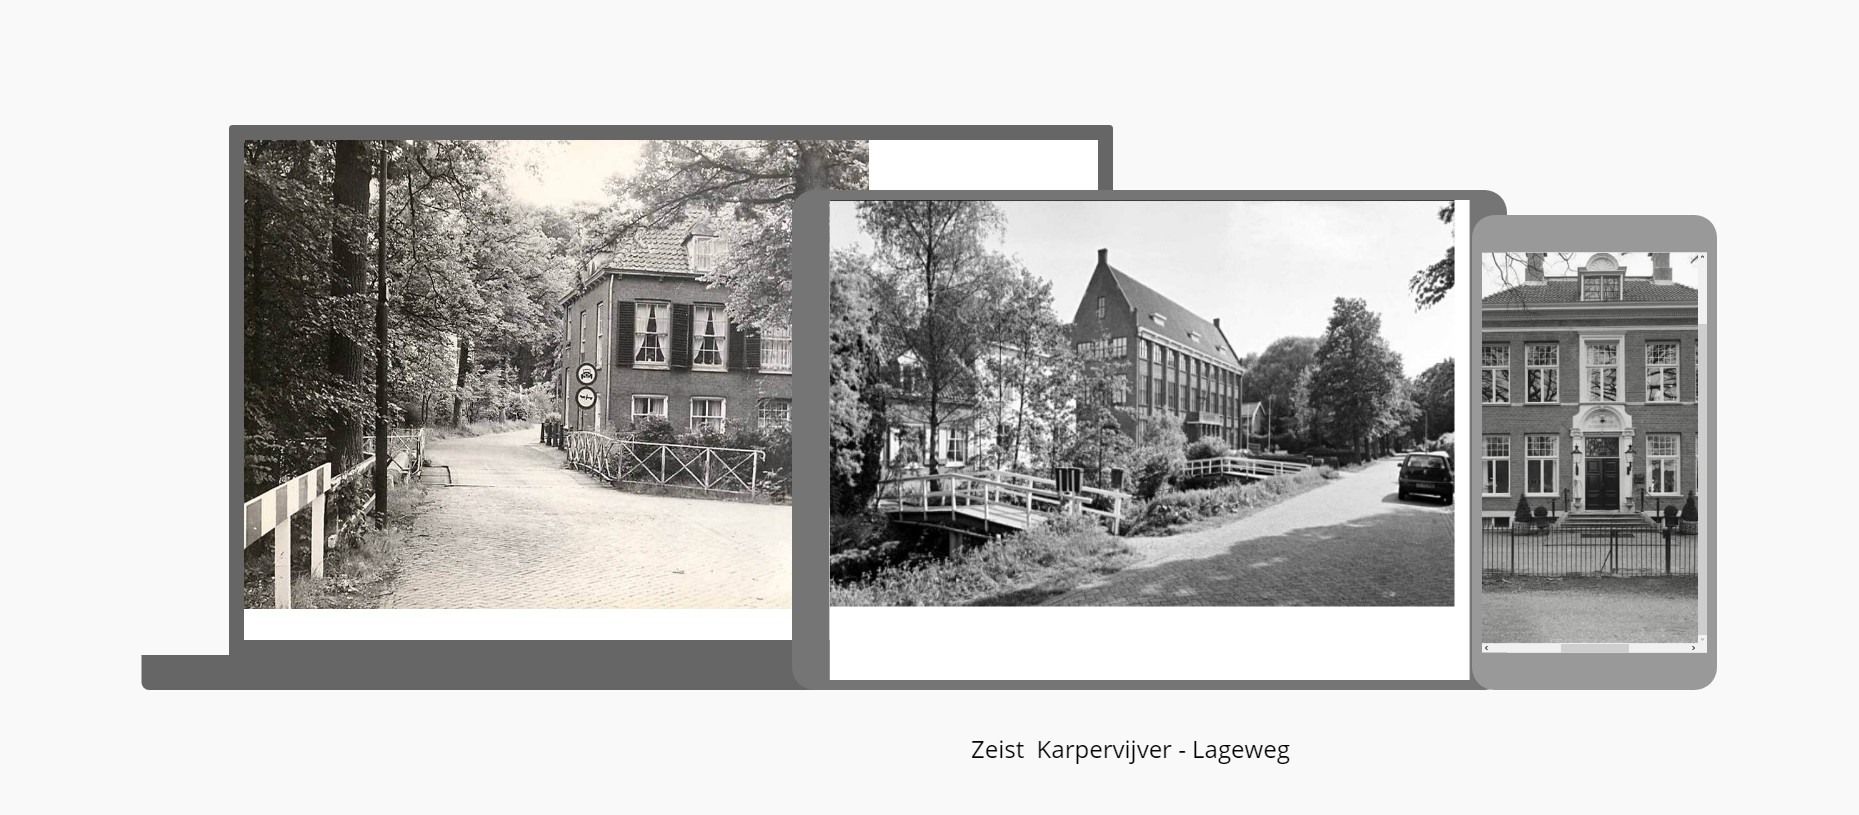 Zeist - Karpervijver - Lageweg